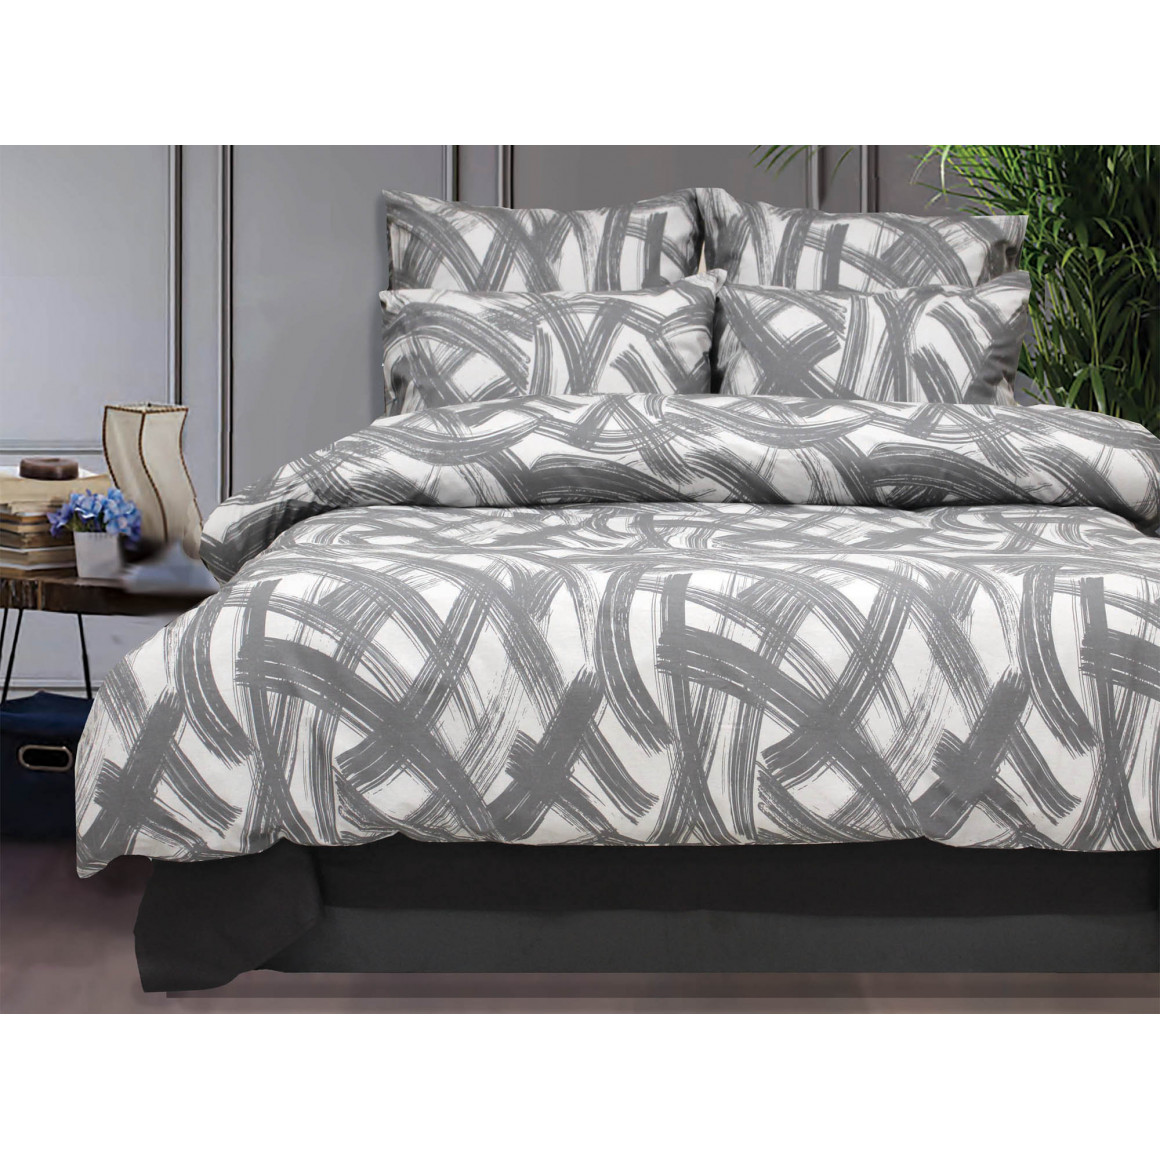 bed linen RESTFUL RFR 2283 V1 2X